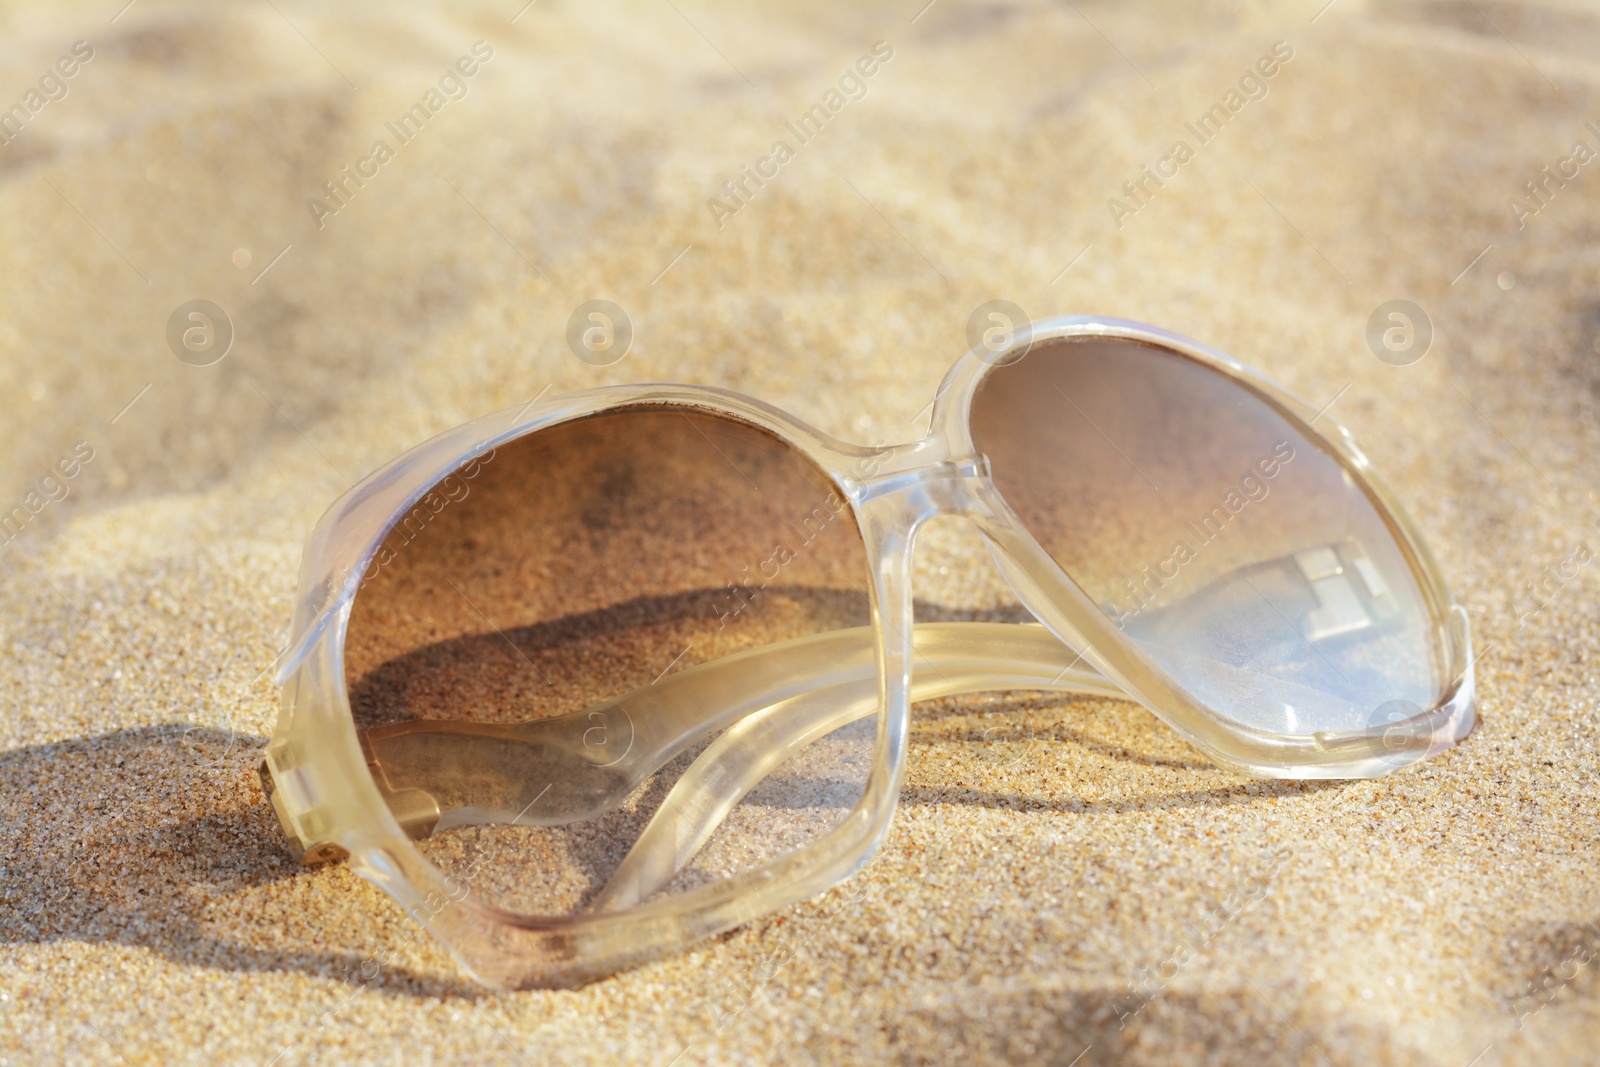 Photo of Stylish sunglasses on sandy beach, closeup view